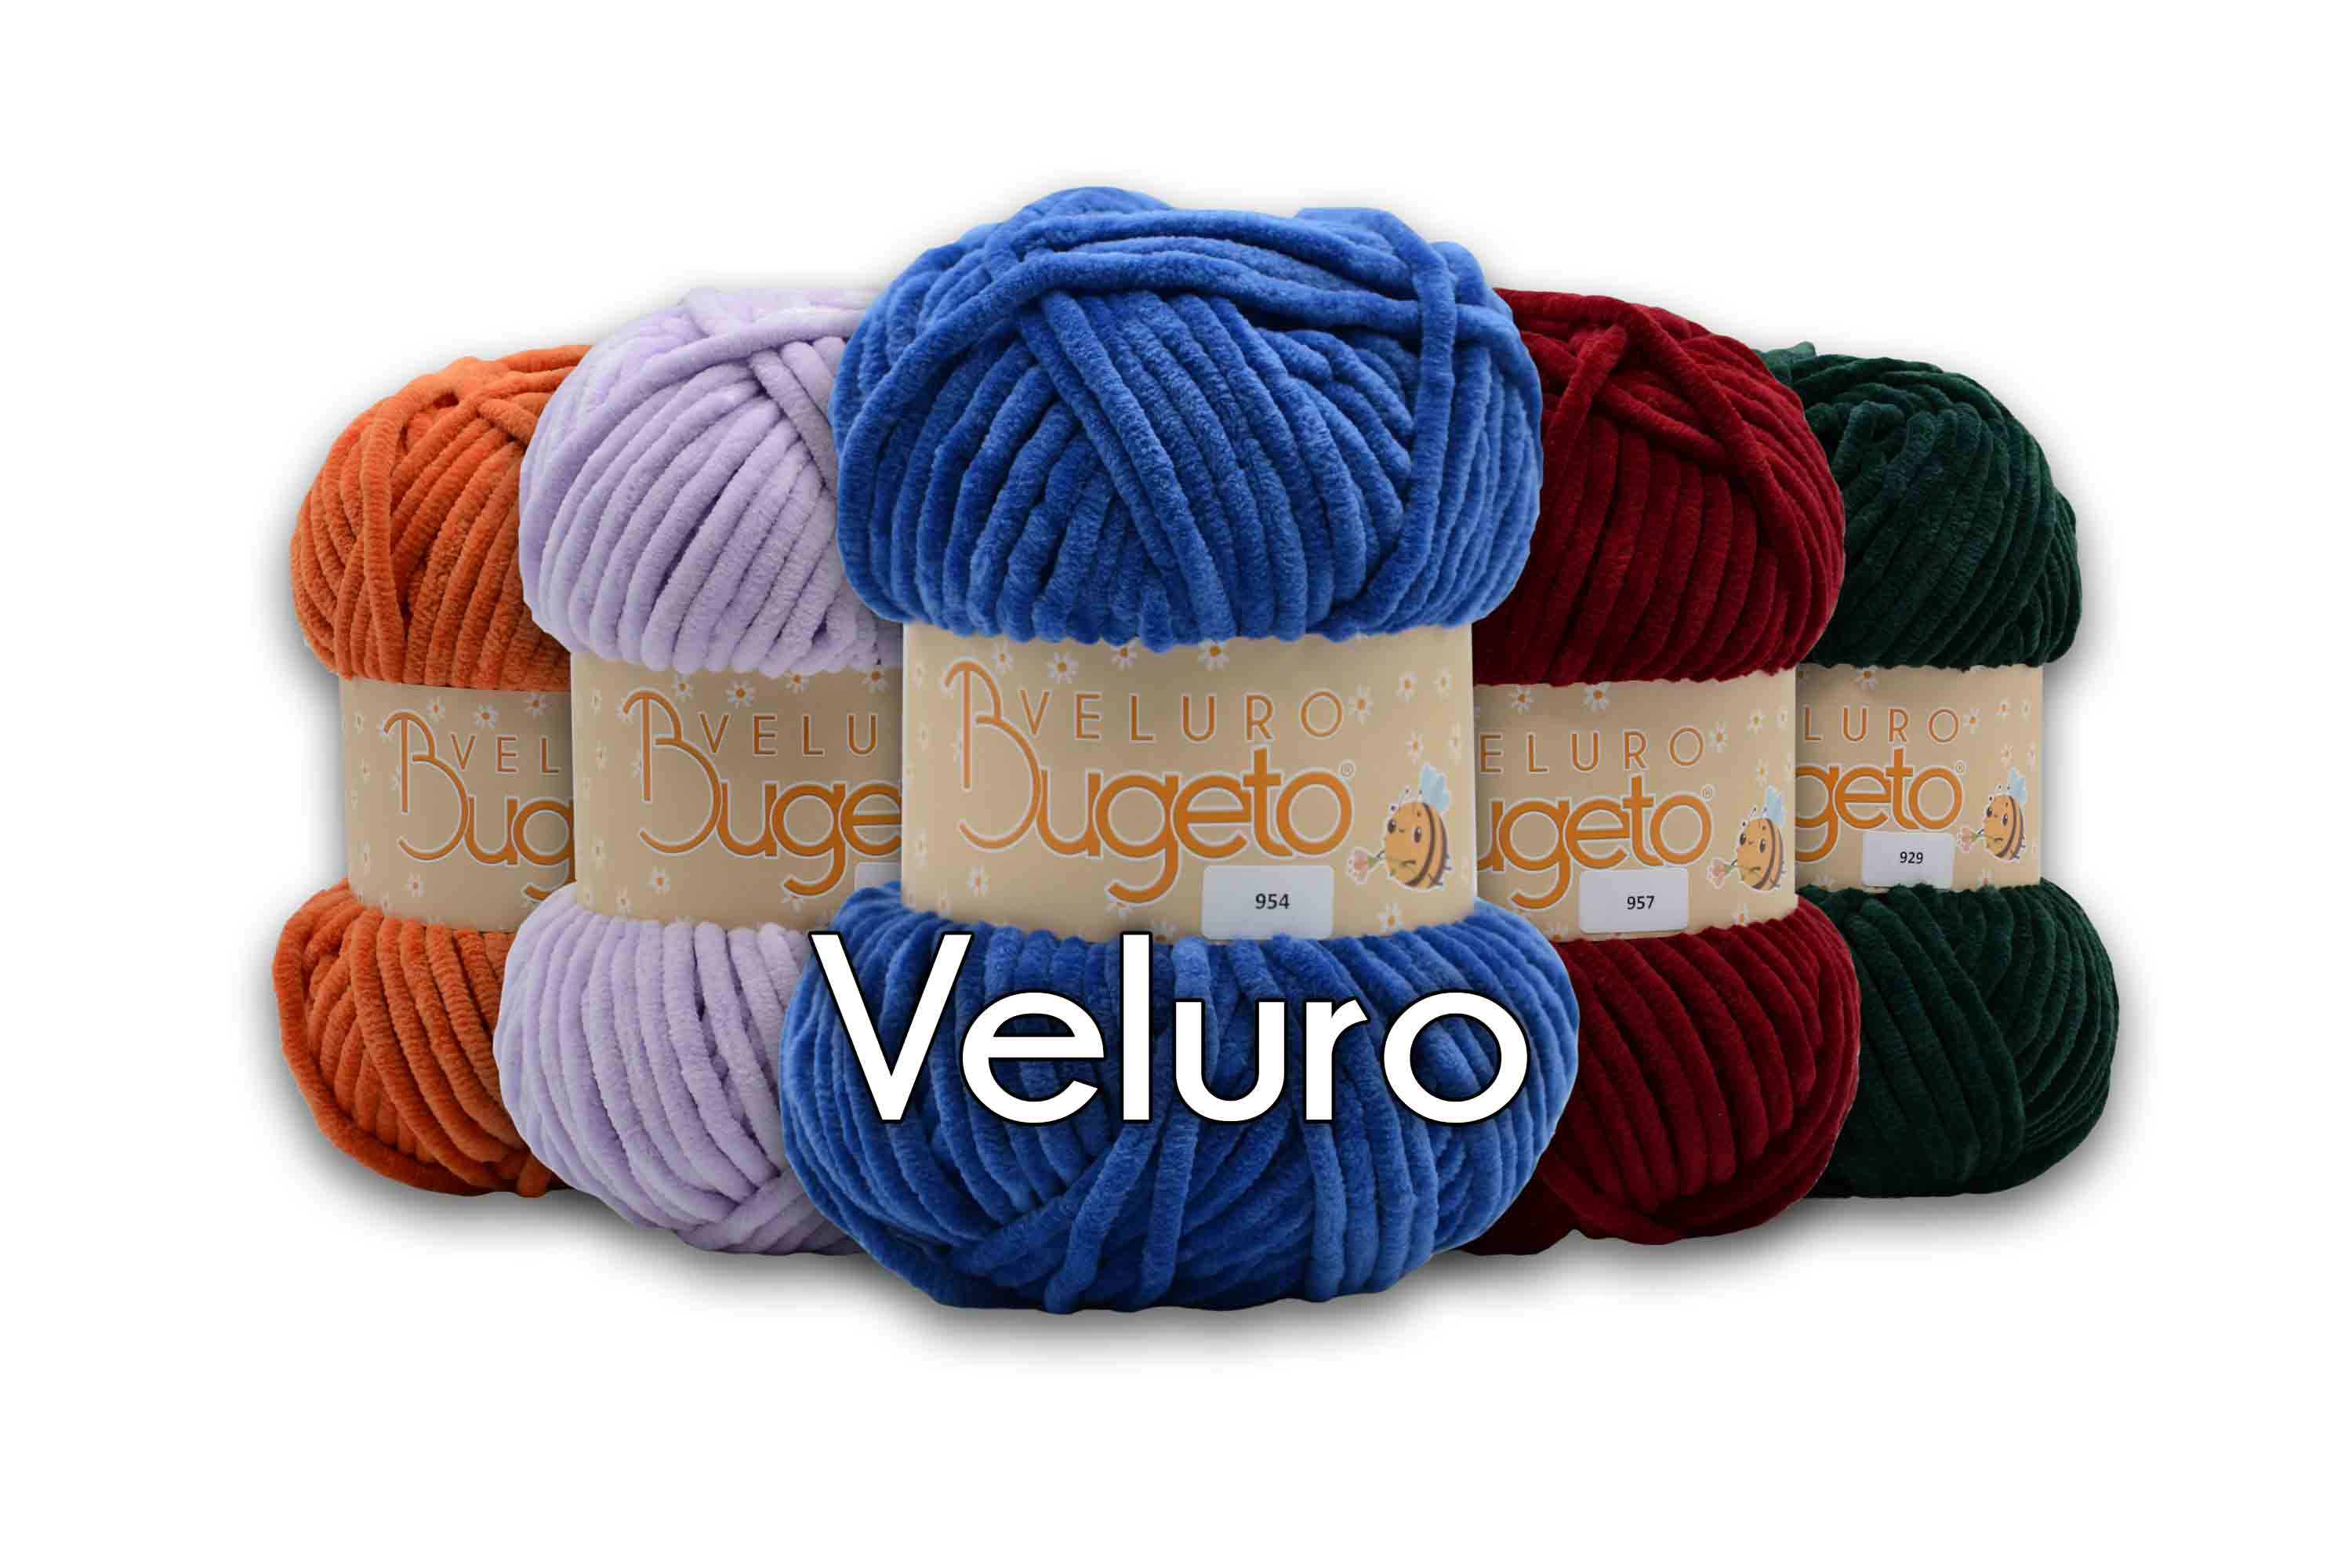 fancy yarn premium polyester yarn Bugeto yarn winter yarn soft thick yarn polyester yarn bugeto